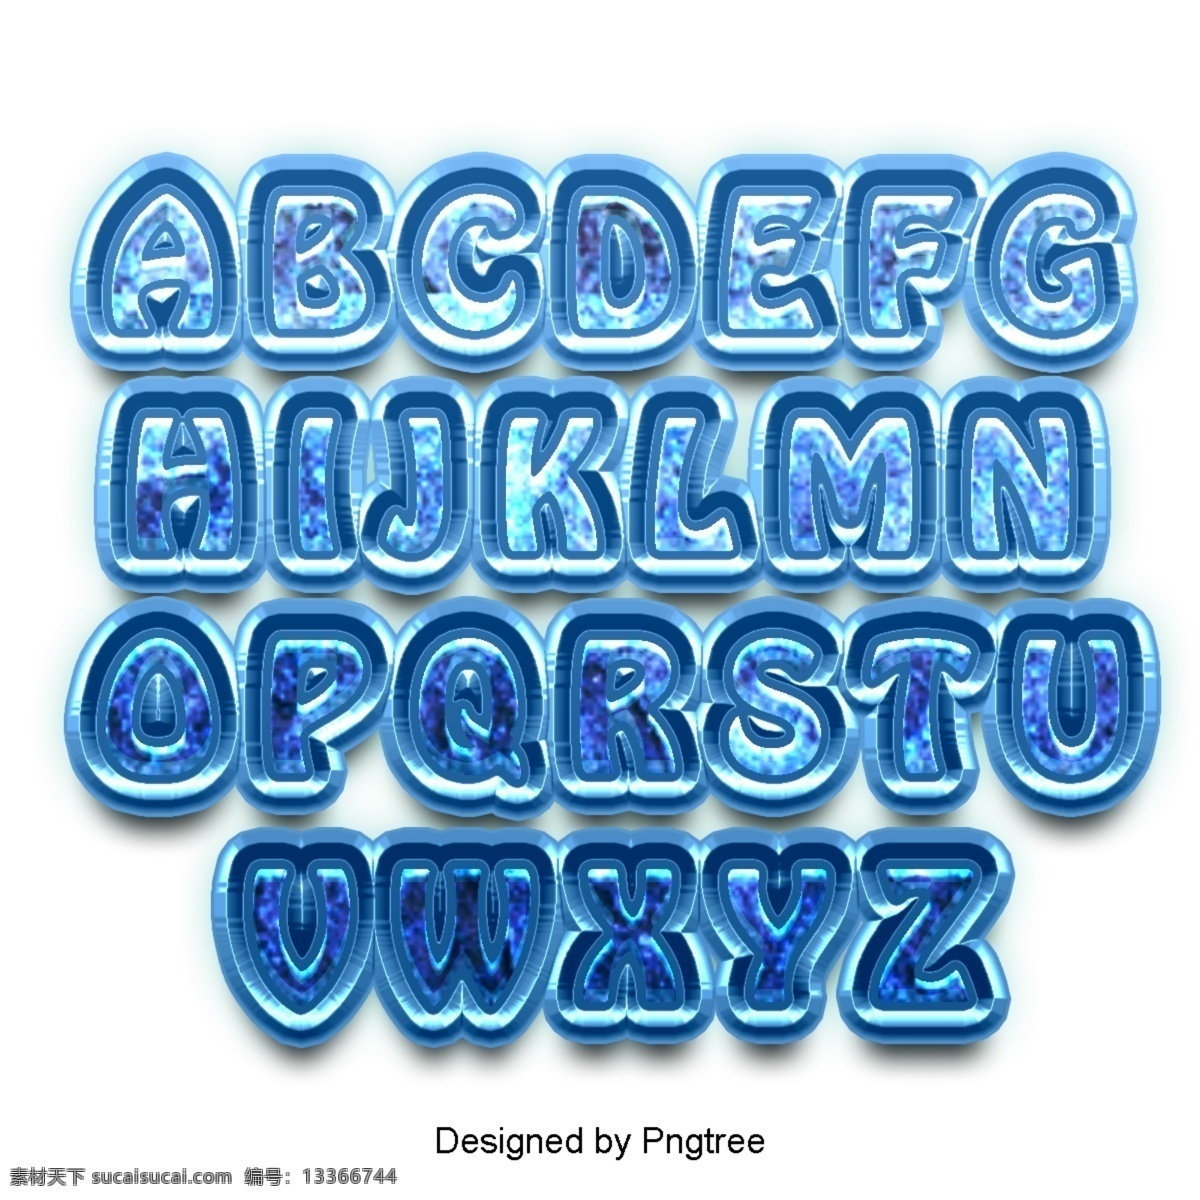 二 十 四 英文 字母 设置 字体 书法 海报 蓝色 冰水 滴 3d 可爱 效果 三维 水滴